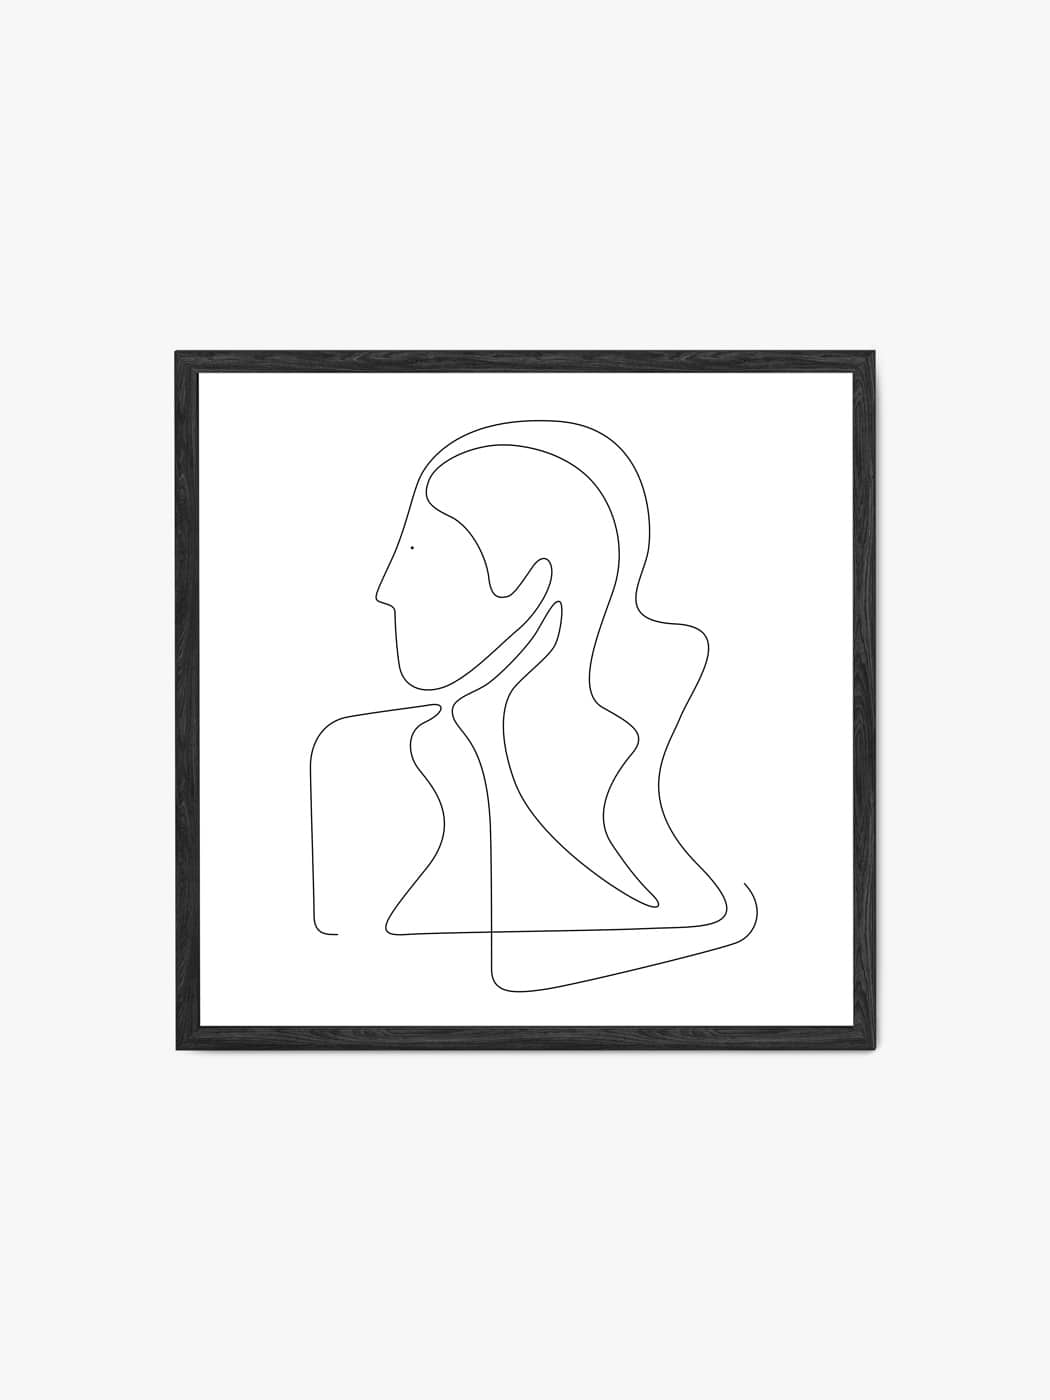 Obraz akustyczny - Plakat line art portret kobiety- Dominika Jędrzejek